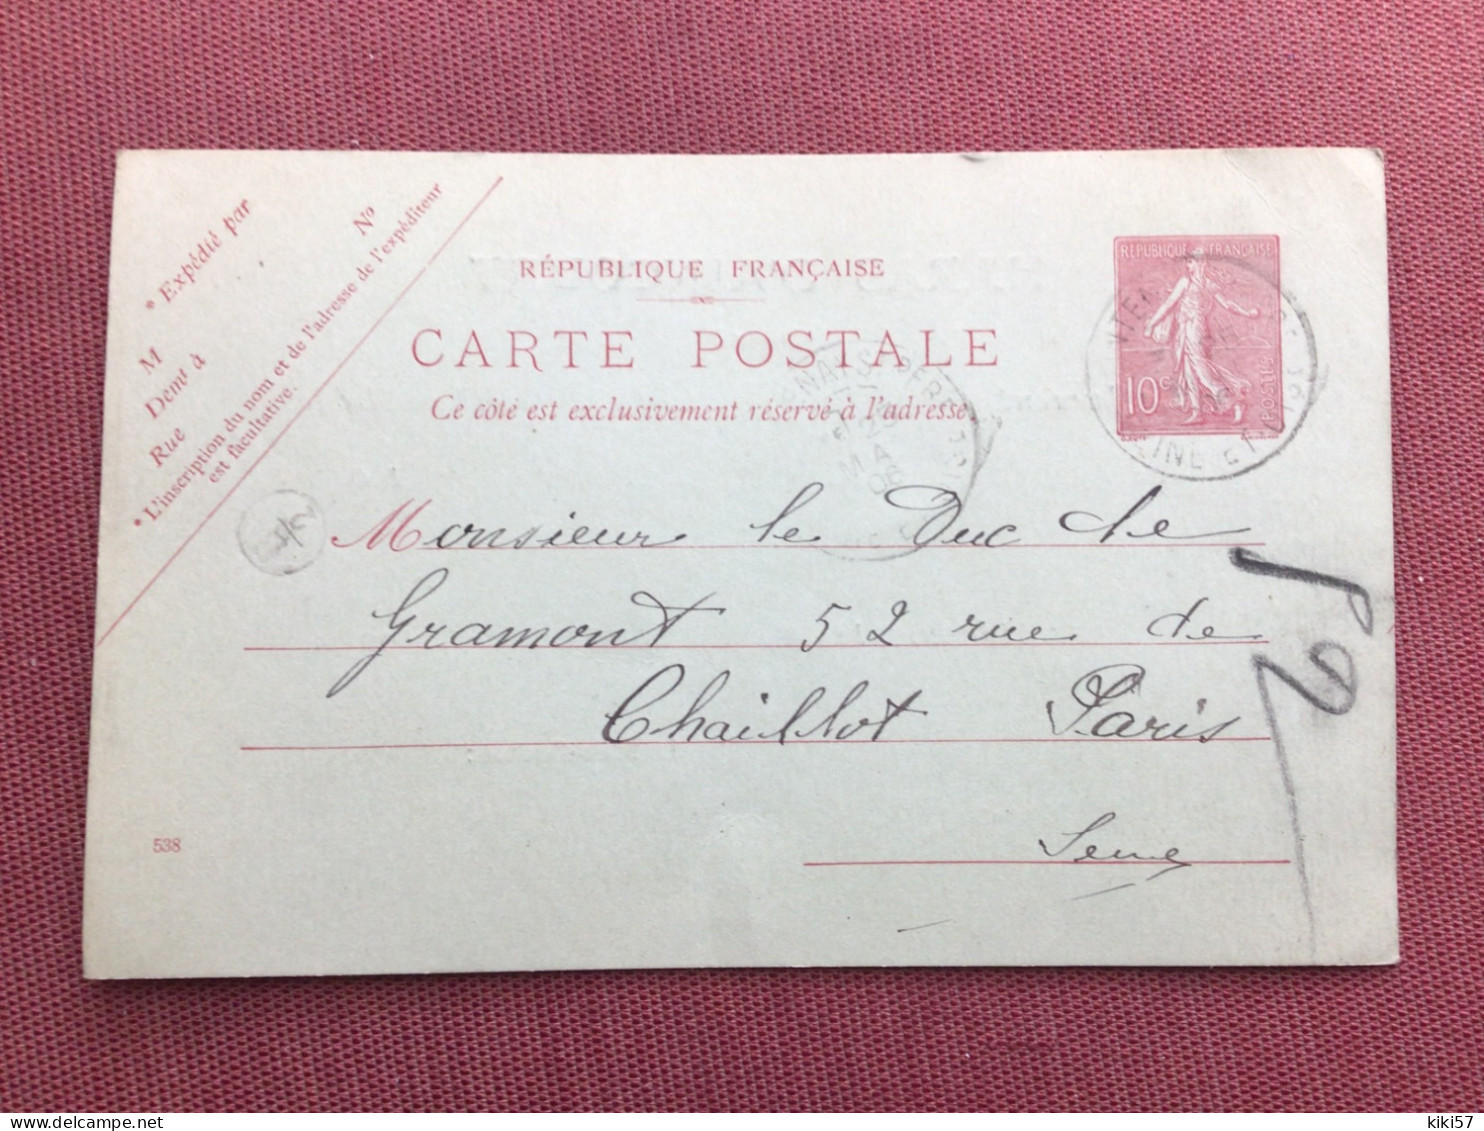 FRANCE Carte Du Haras D’AINCOURT Pour Le Duc De GRAMONT 1906 - Storia Postale